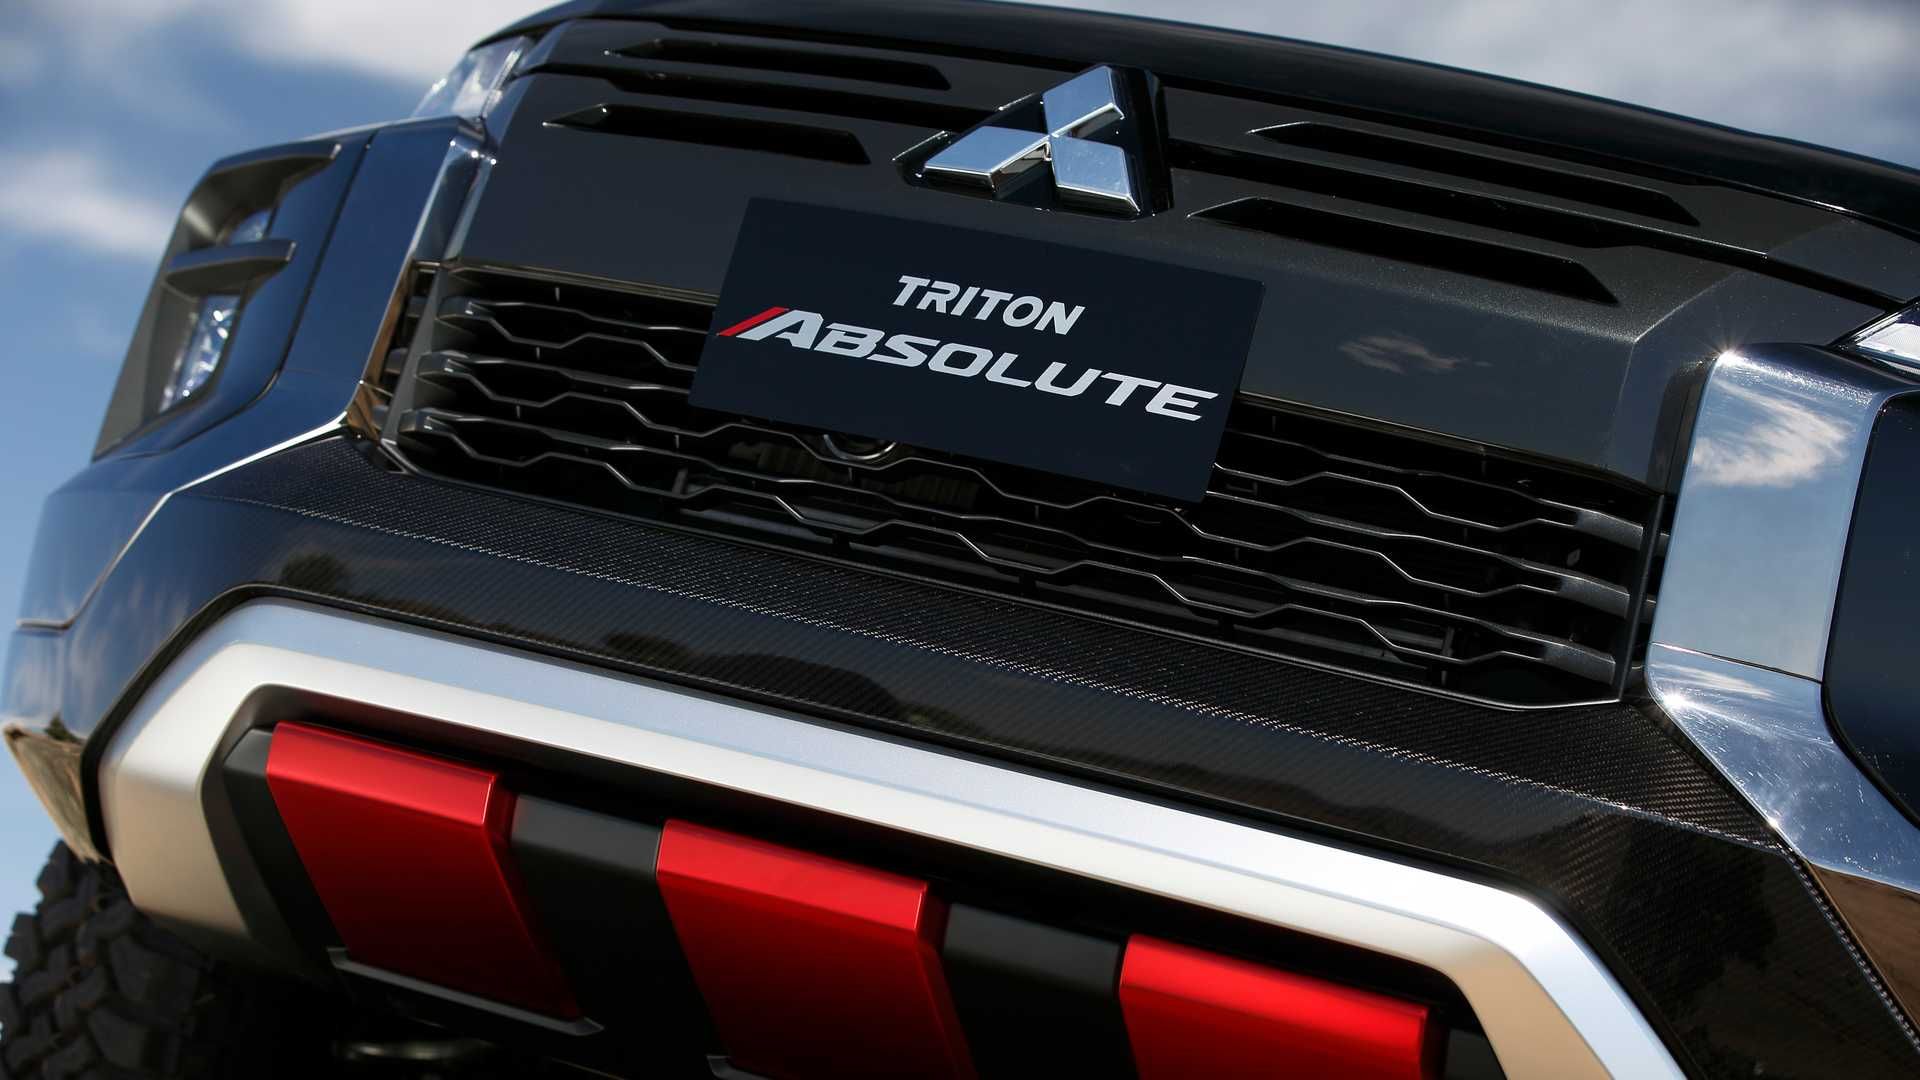 2019 Mitsubishi Triton Absolute Concept